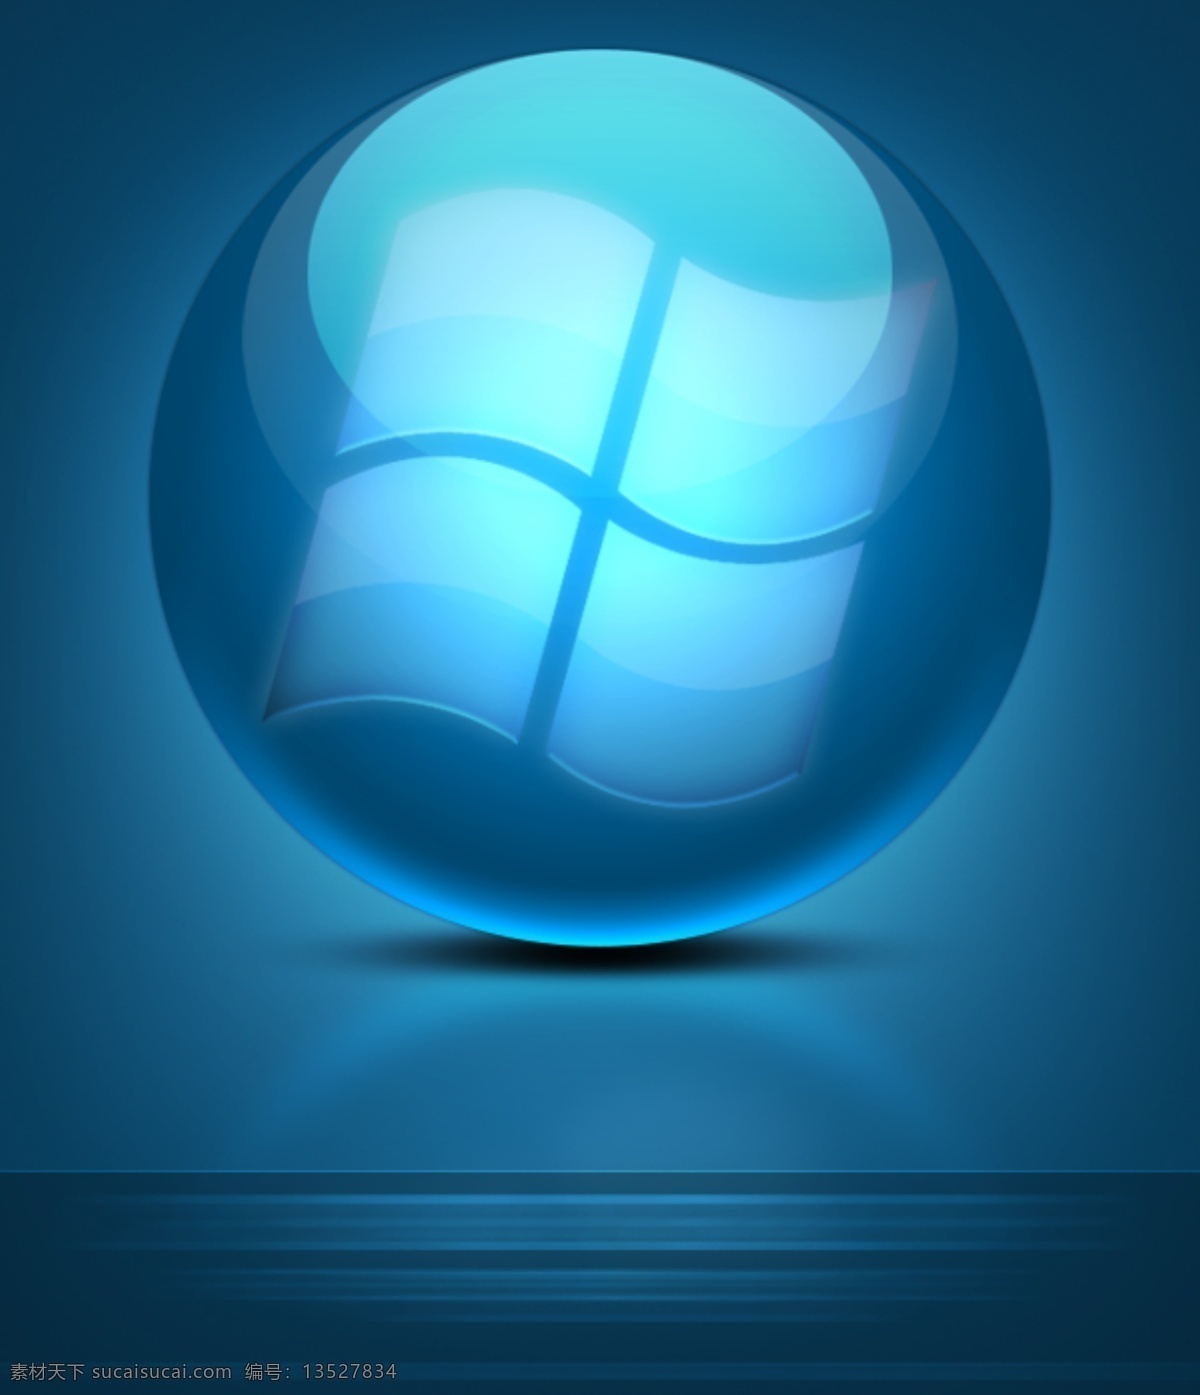 蓝色 window 水晶球 蓝色背景 发光球 球 水晶 蓝色水晶球 分层 青色 天蓝色